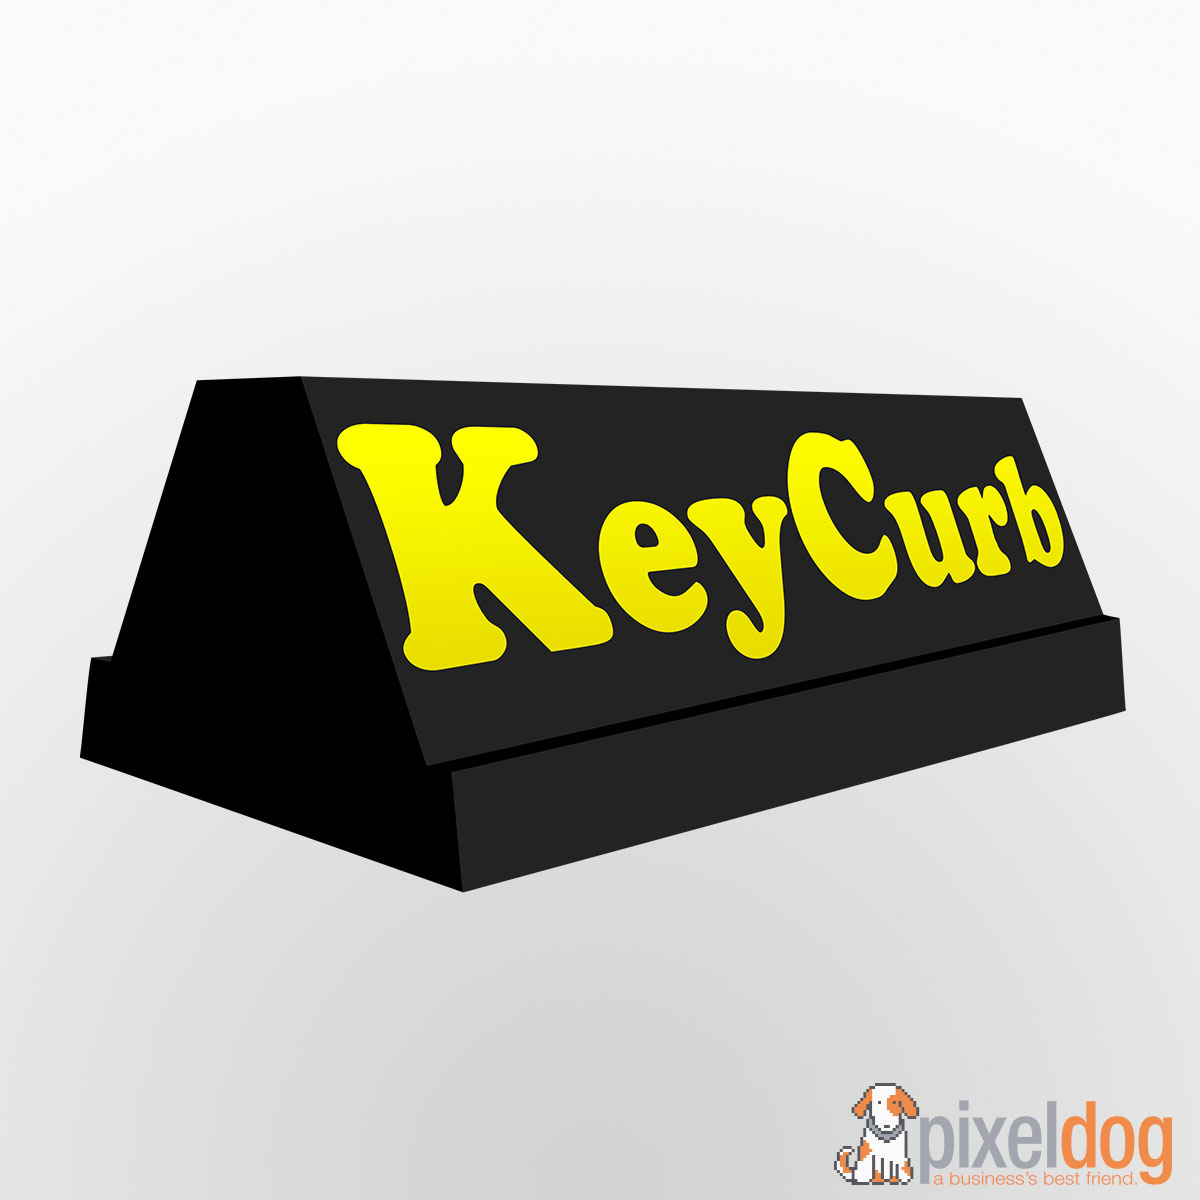 KeyCurb (Company)